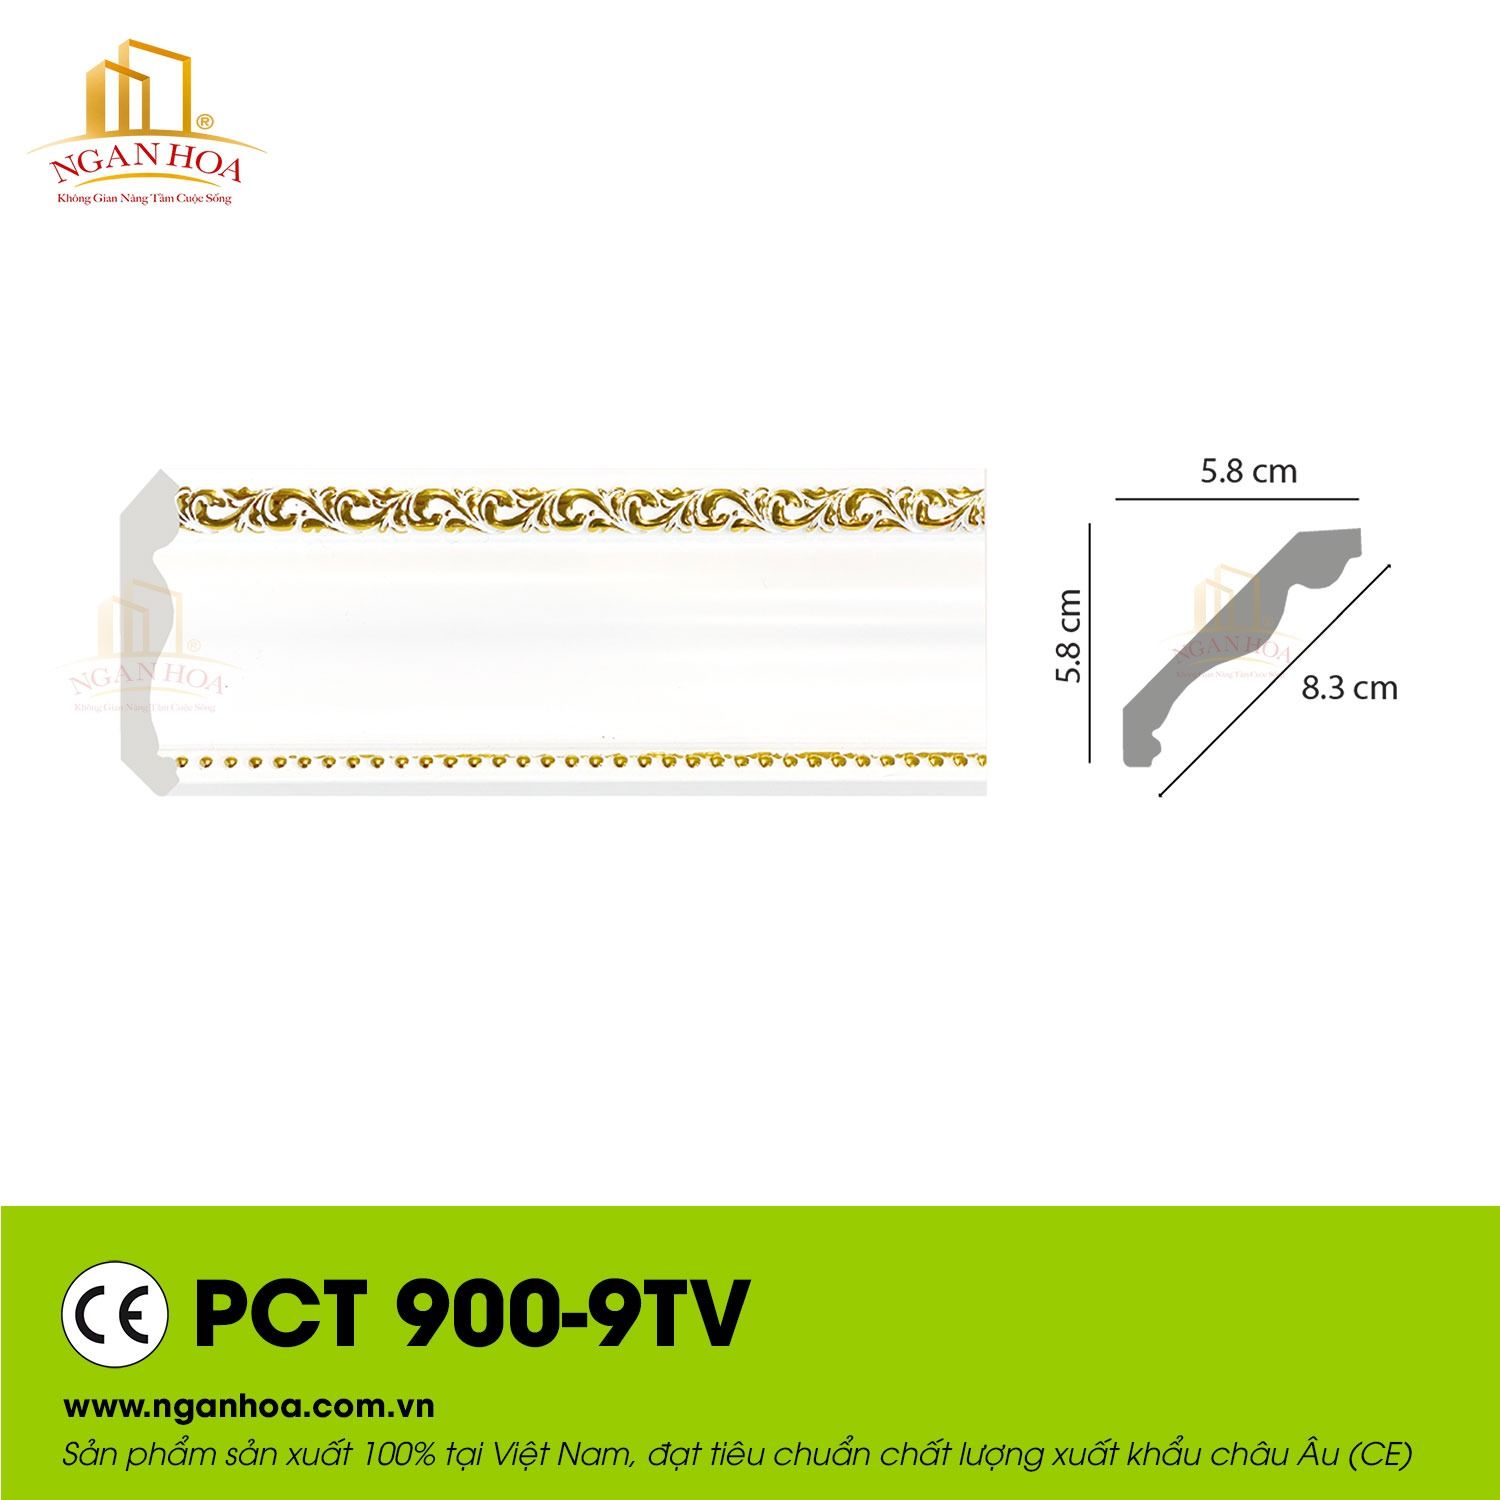 Phào chỉ trần PCT 900-9TV